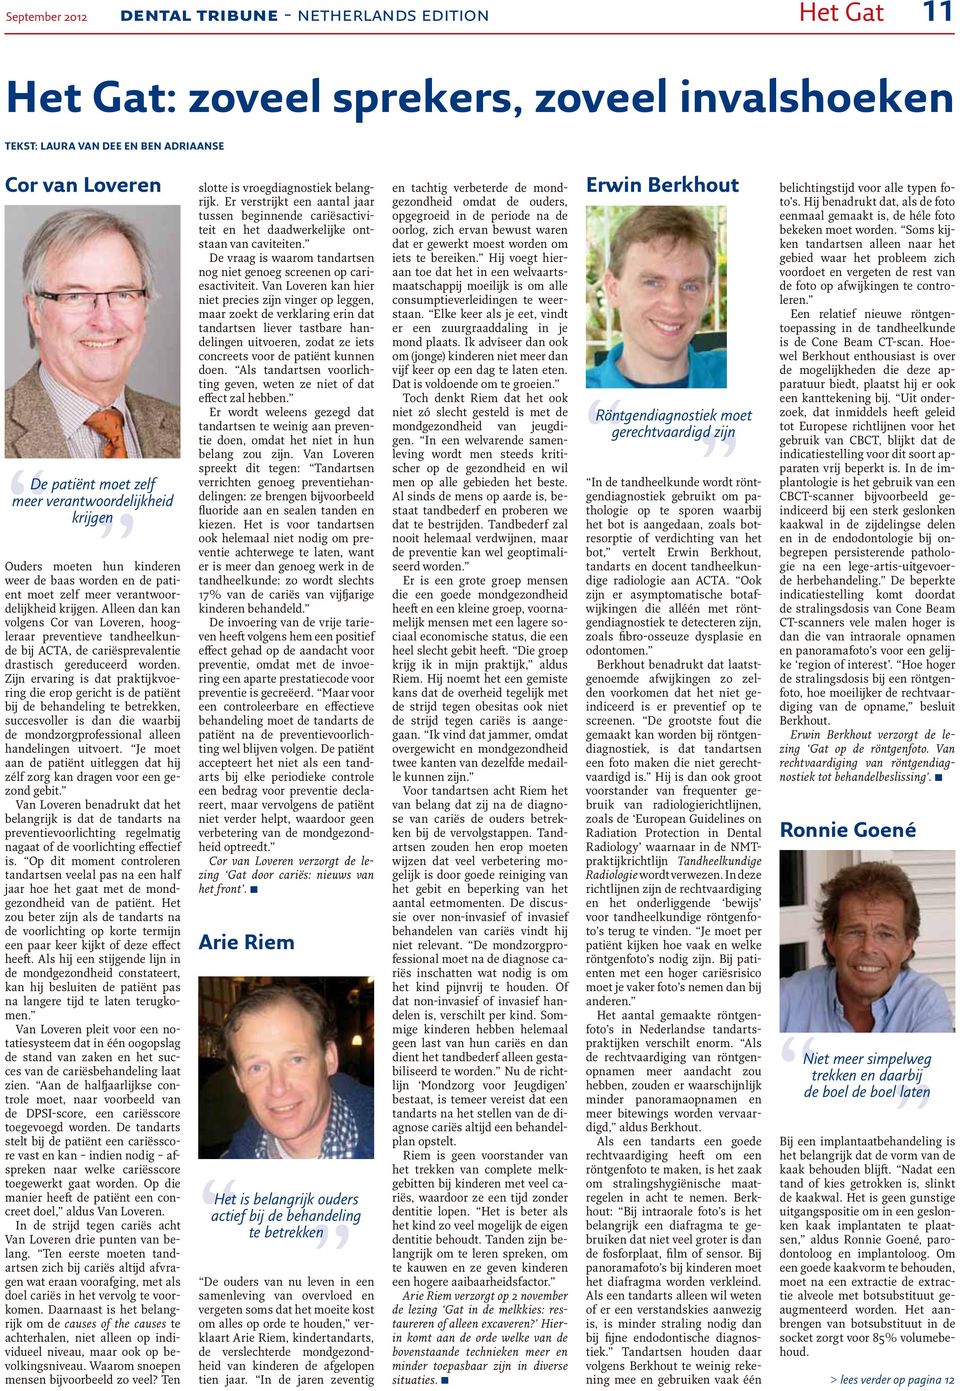 The World's Dental Newspaper - Netherlands Edition. Congres Het Gat Zoveel  sprekers, zoveel invalshoeken. Pagina PDF Gratis download